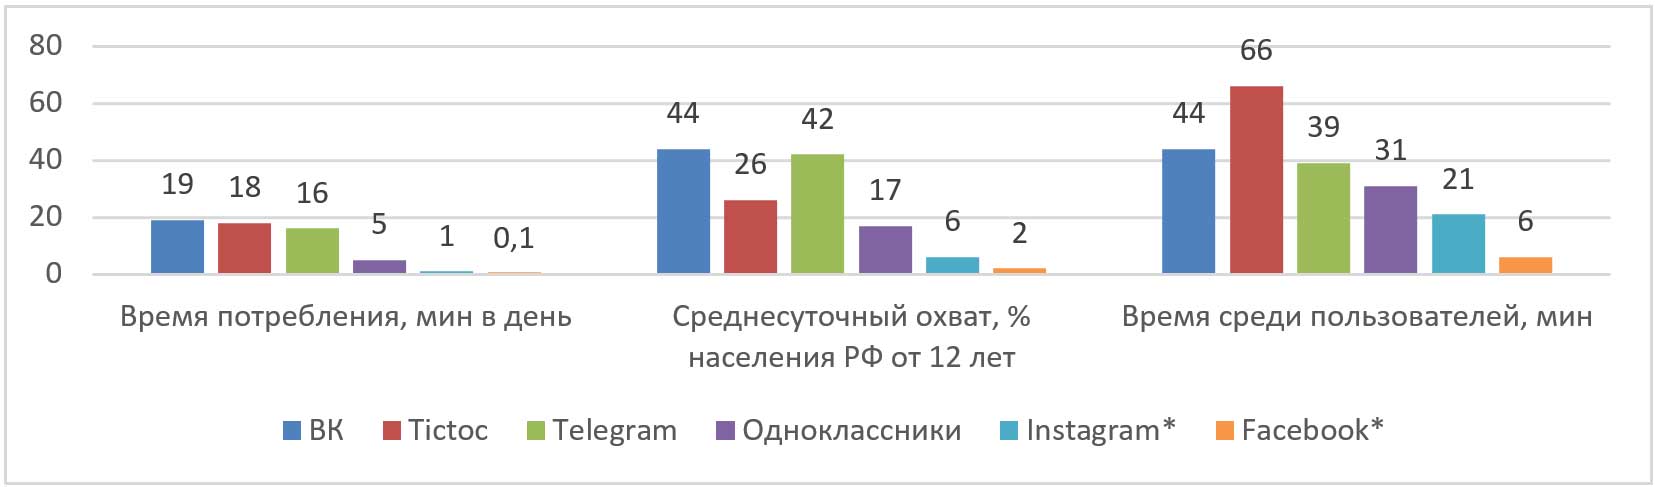 Данные по использованию социальных сетей российскими пользователями